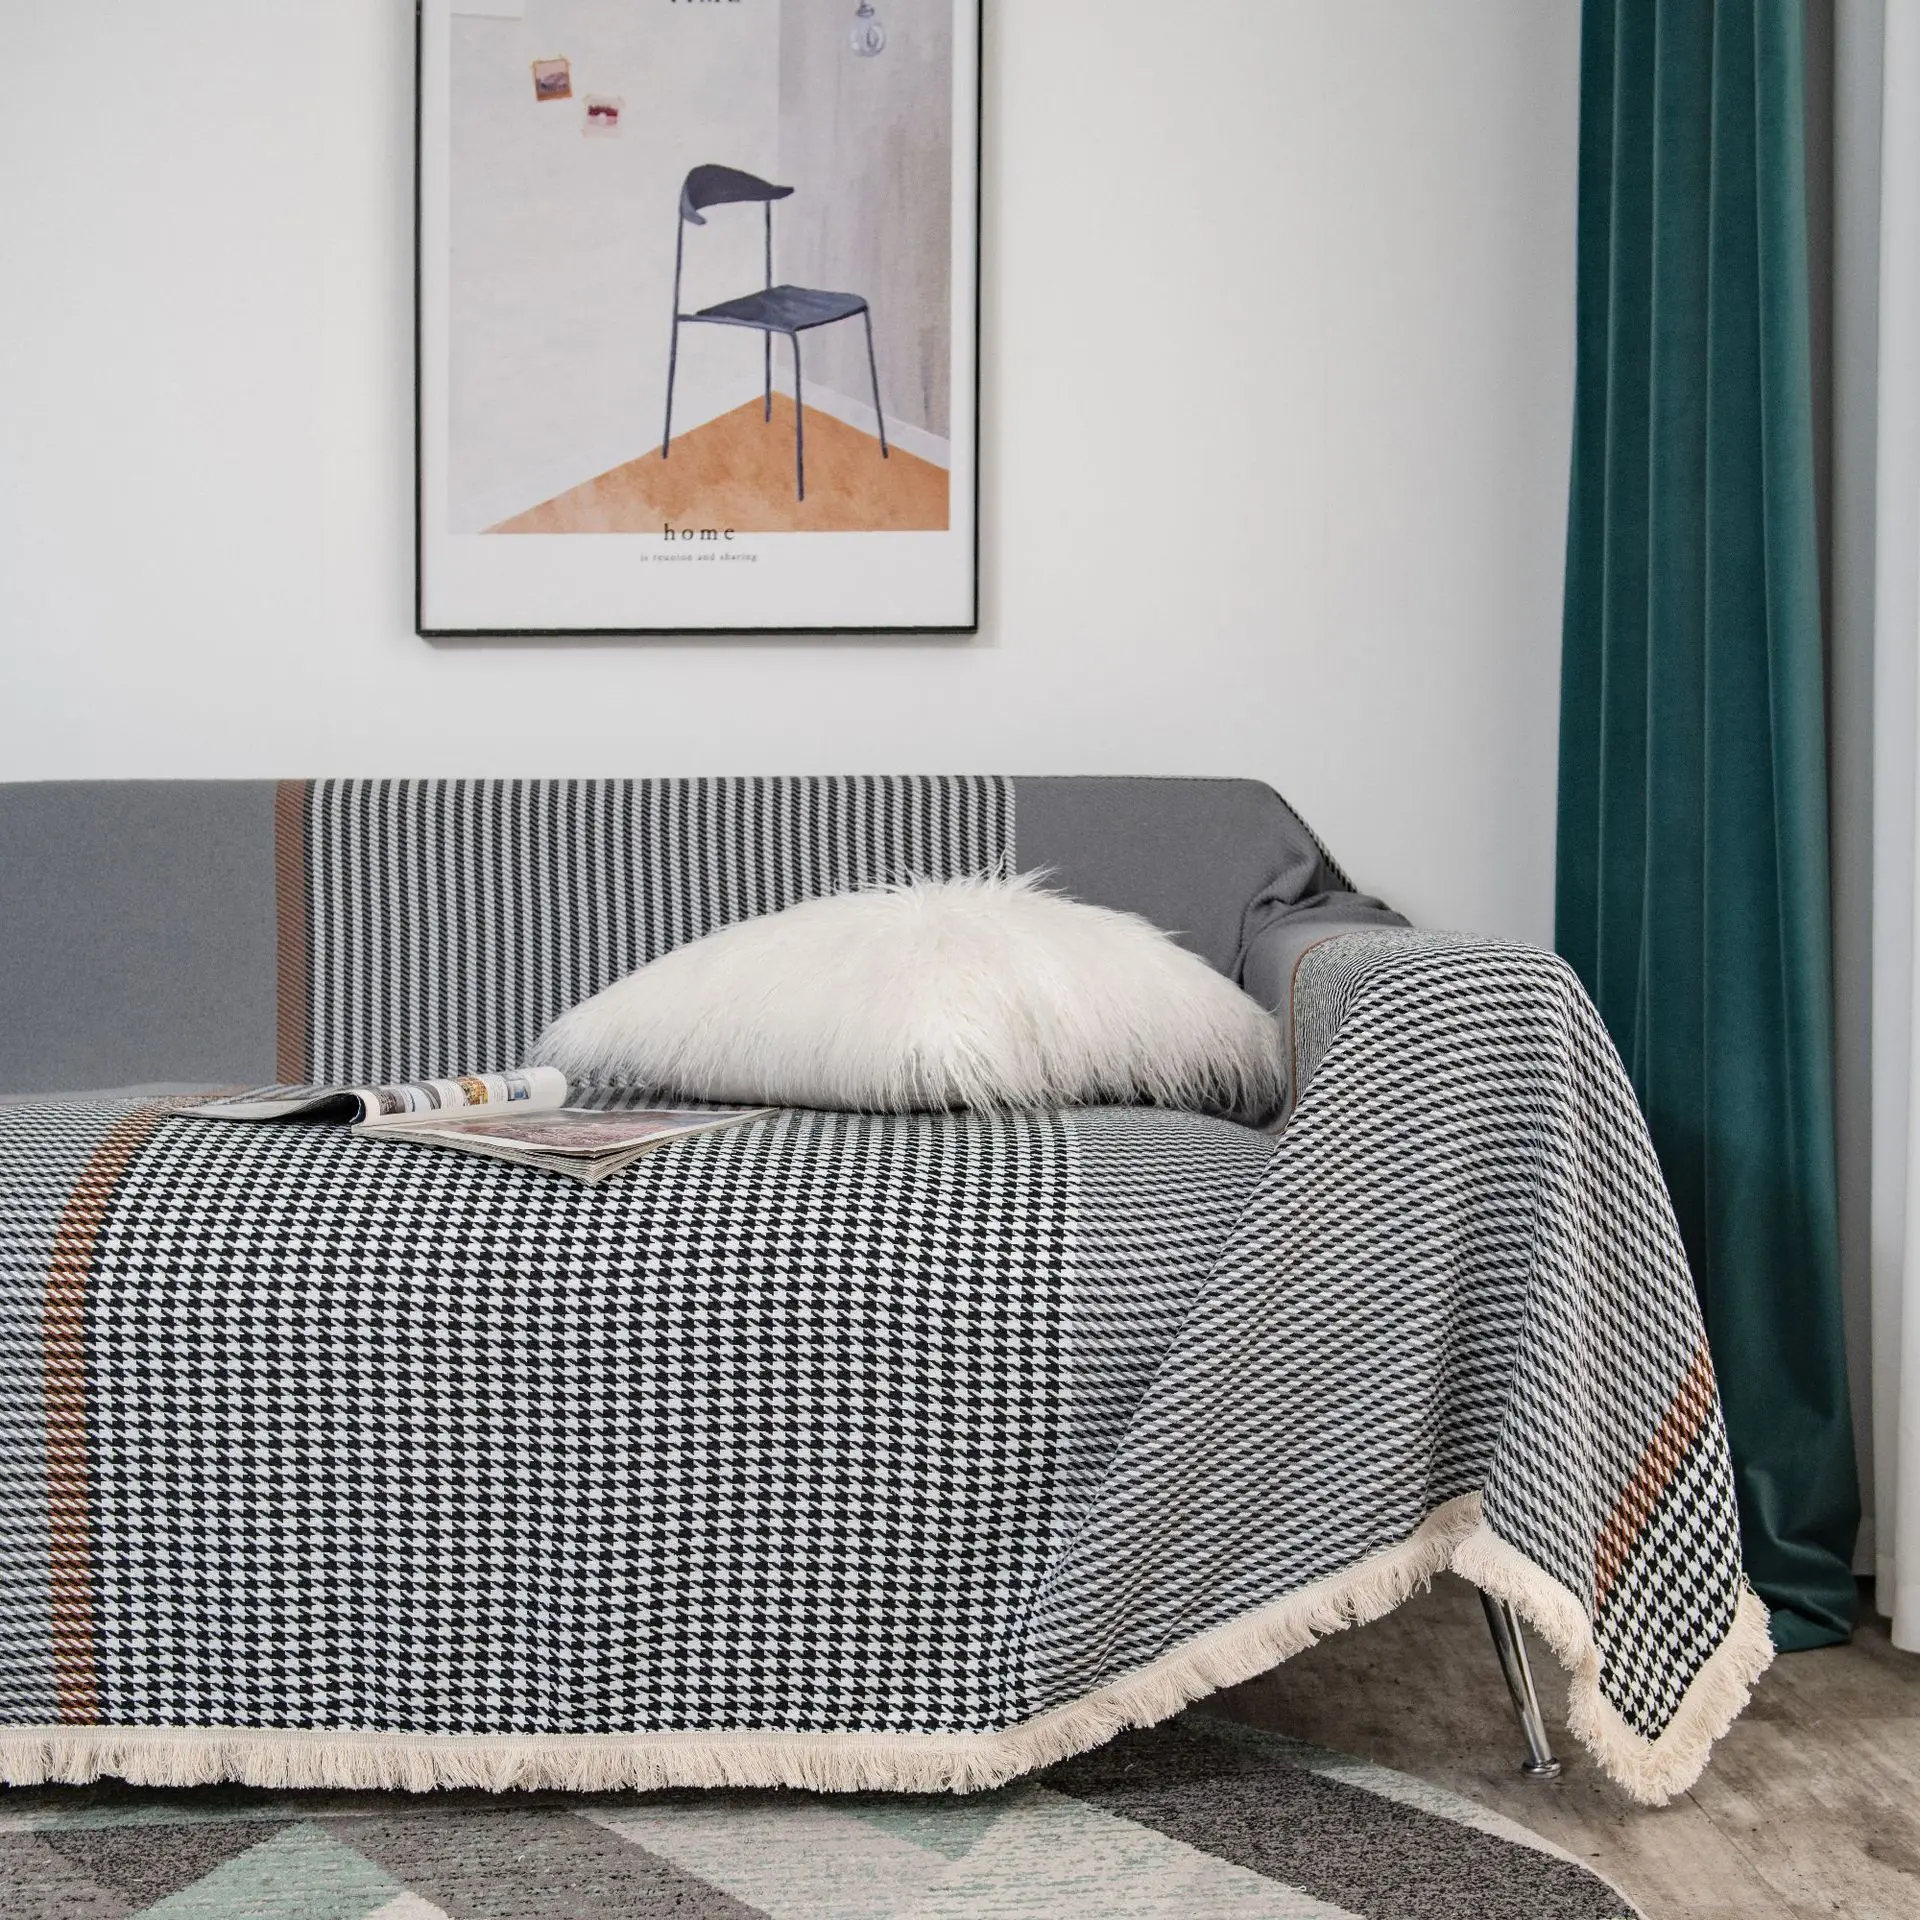 

Чехол для дивана в американском стиле ретро нескользящее полотенце серый жаккардовый плотный чехол тканевое покрывало для дивана домашняя декорация всесезонное универсальное